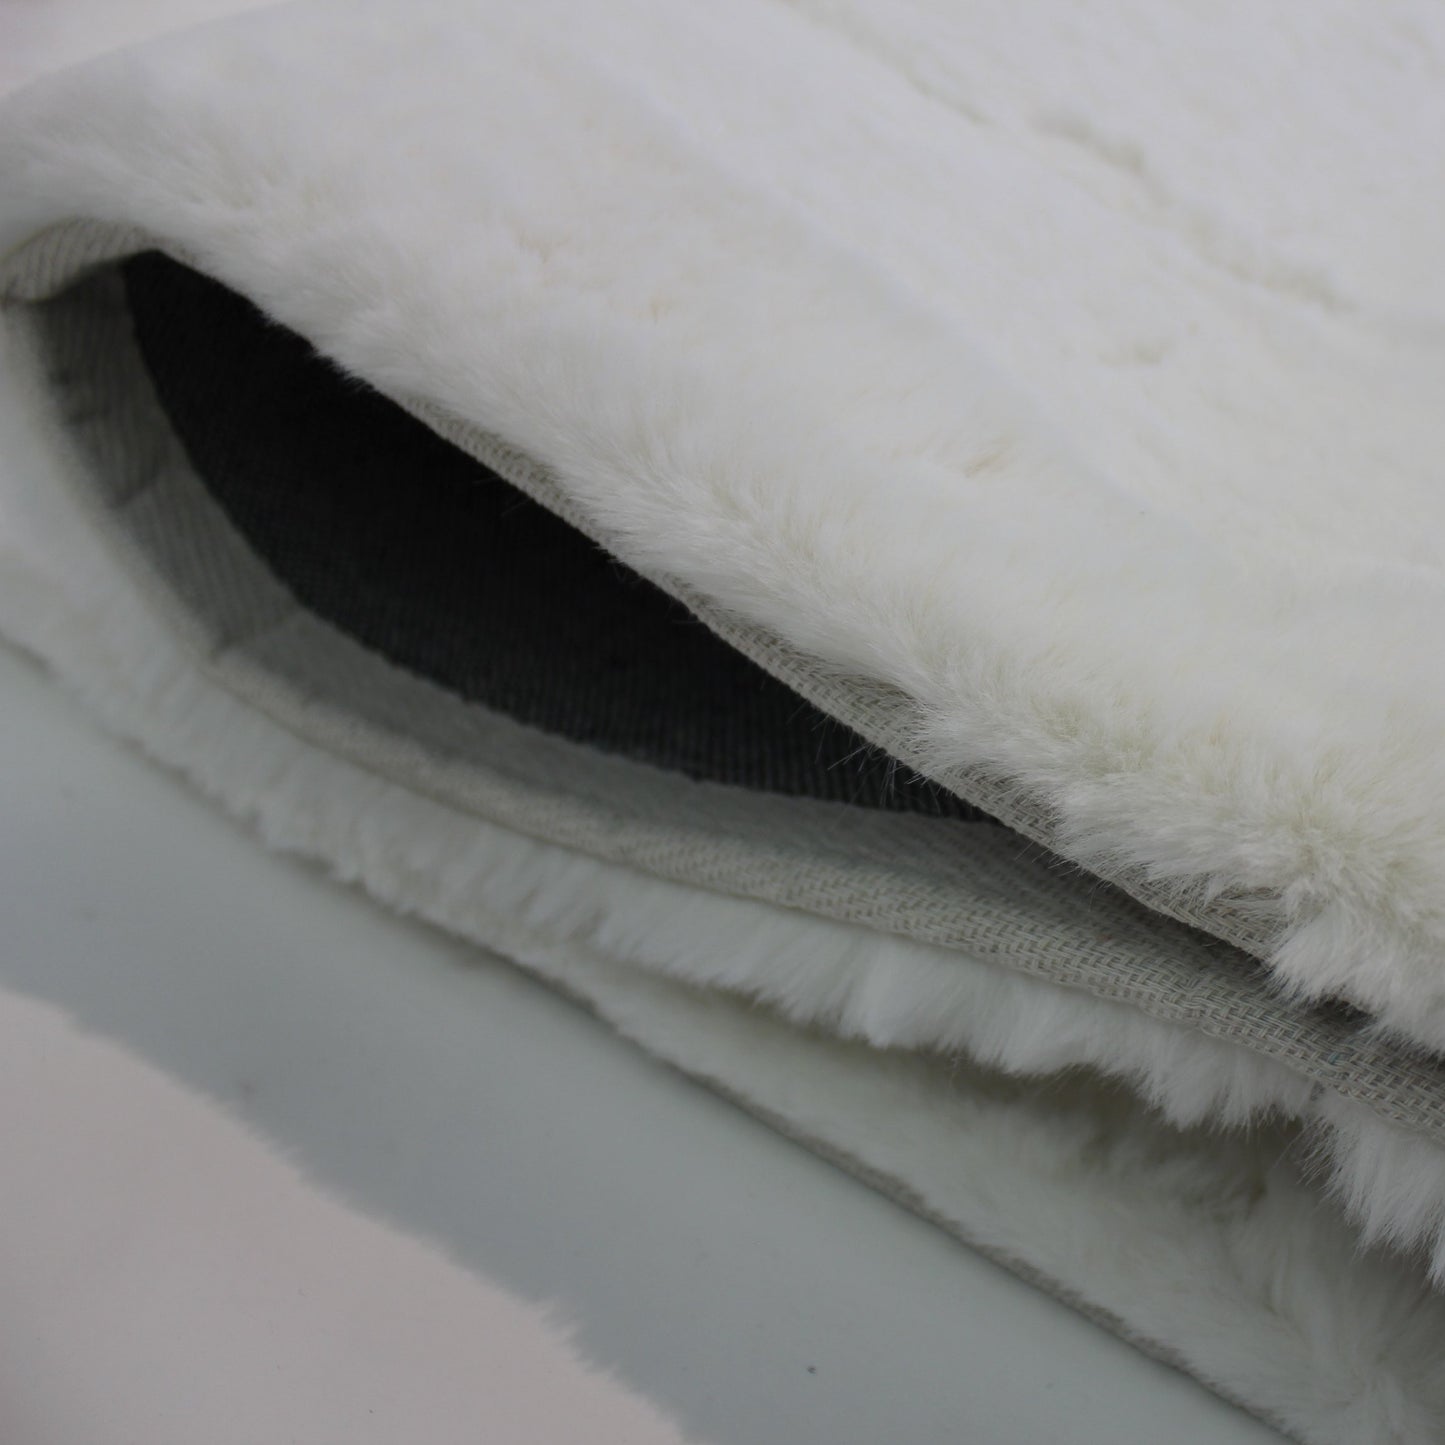 Cozy Bath Mat Faux Fur Area Rug / Carpet